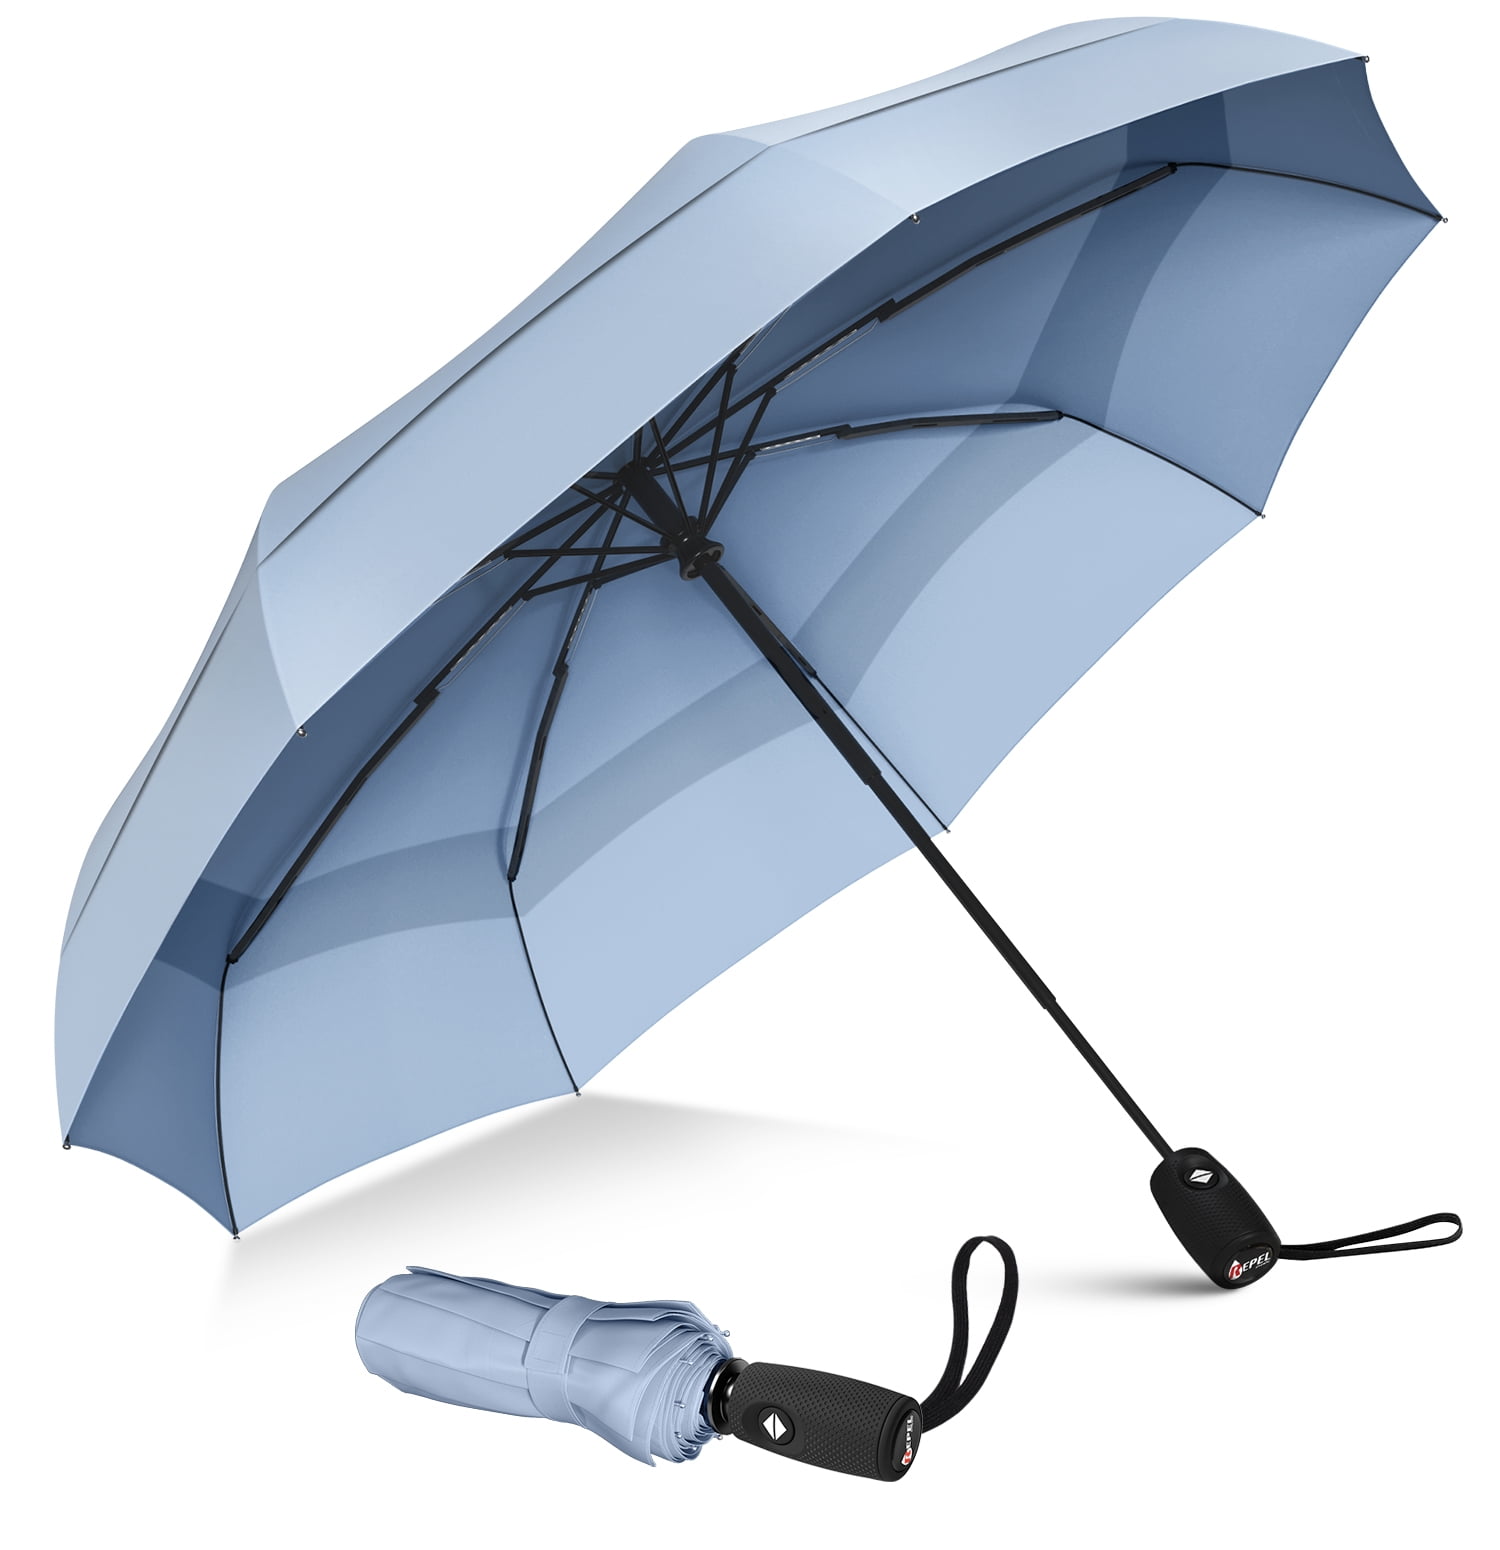 DOENR Compact Travel Umbrella Brown Wall Sun and Rain Auto Open Close Umbrellas Lightweight Portable Outdoor Folding Umbrella